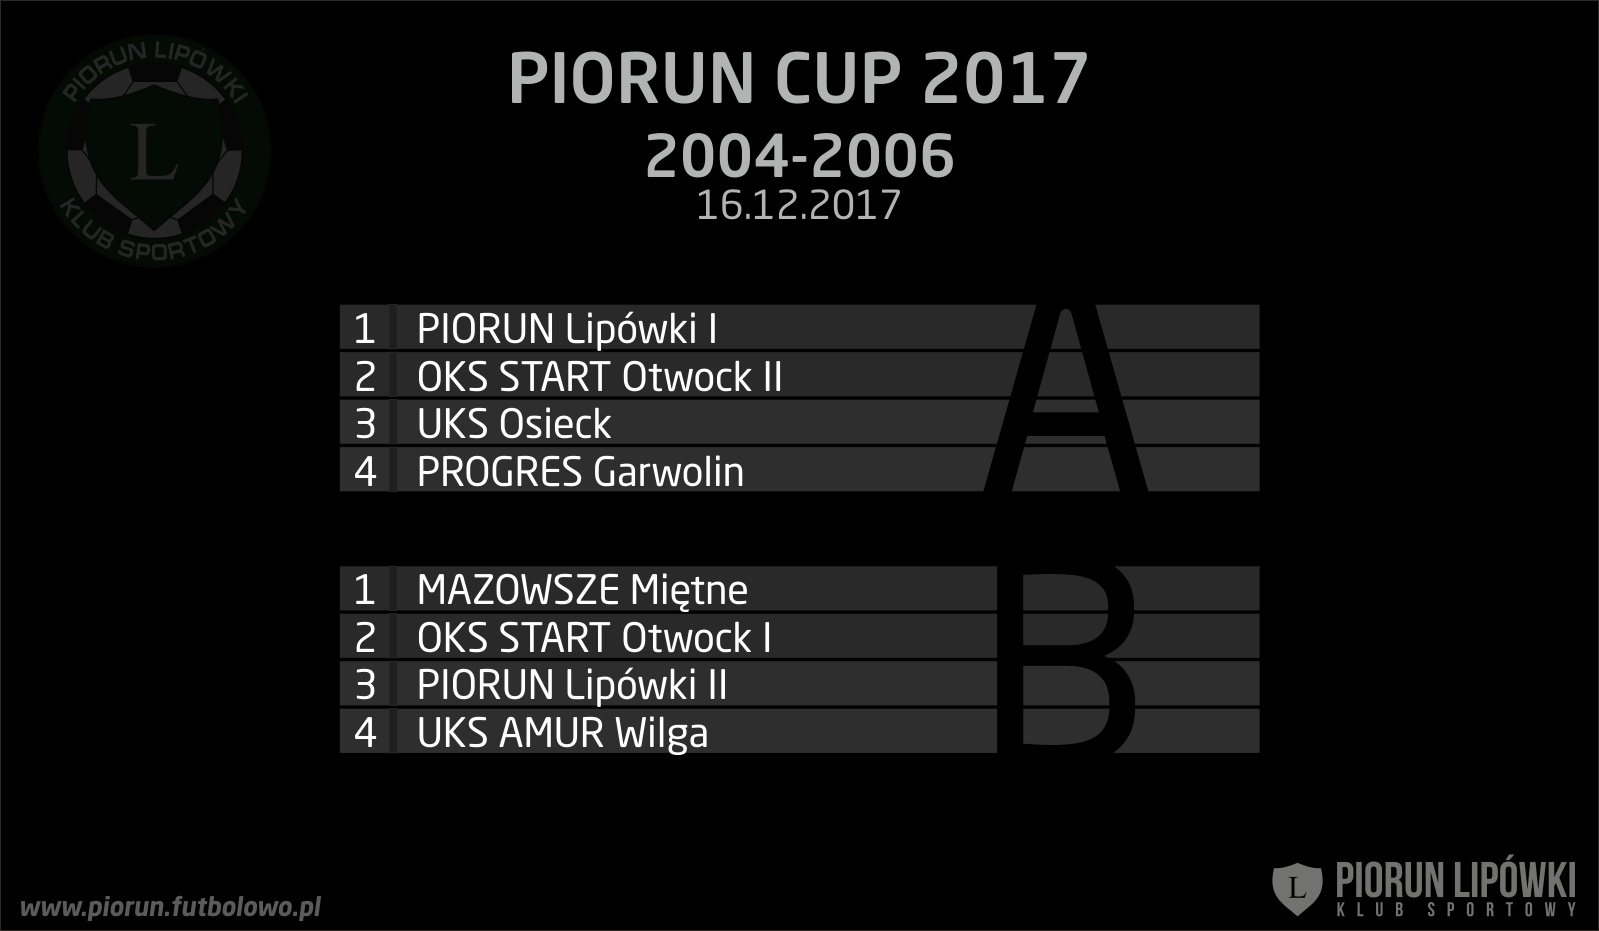 Piorun Cup 2004 - podzial na grupy